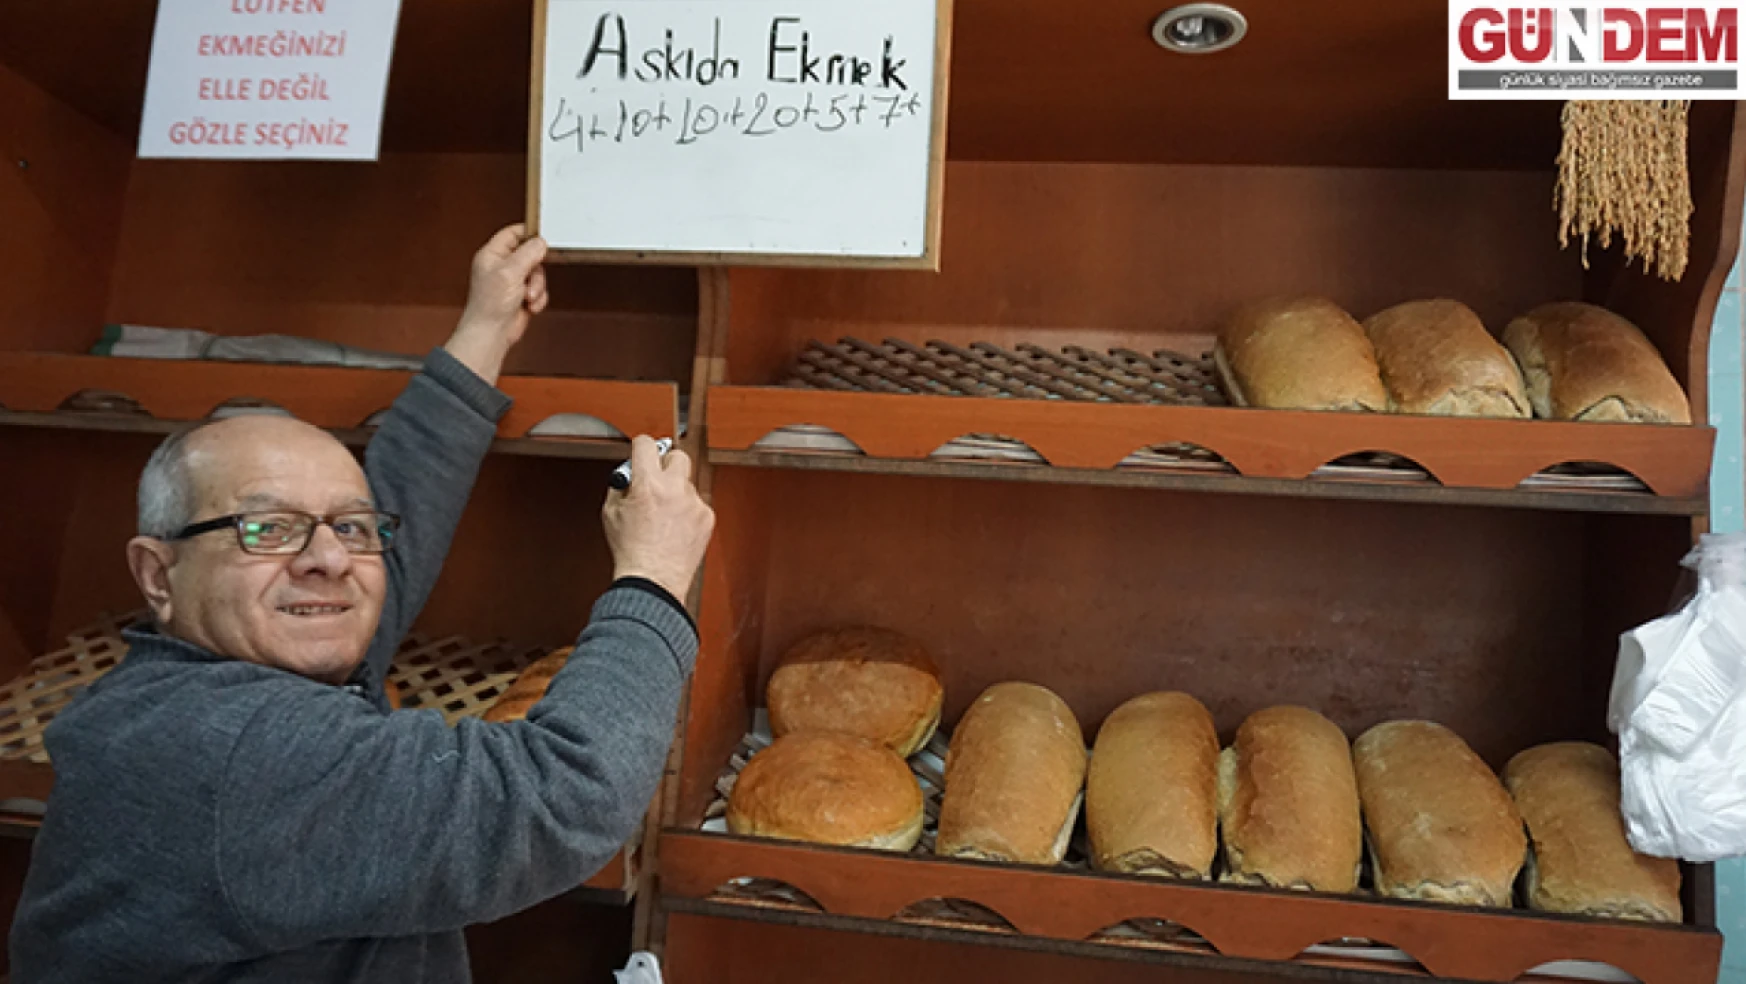 Geçmişe uzanan 'Askıda Ekmek' geleneği devam ediyor